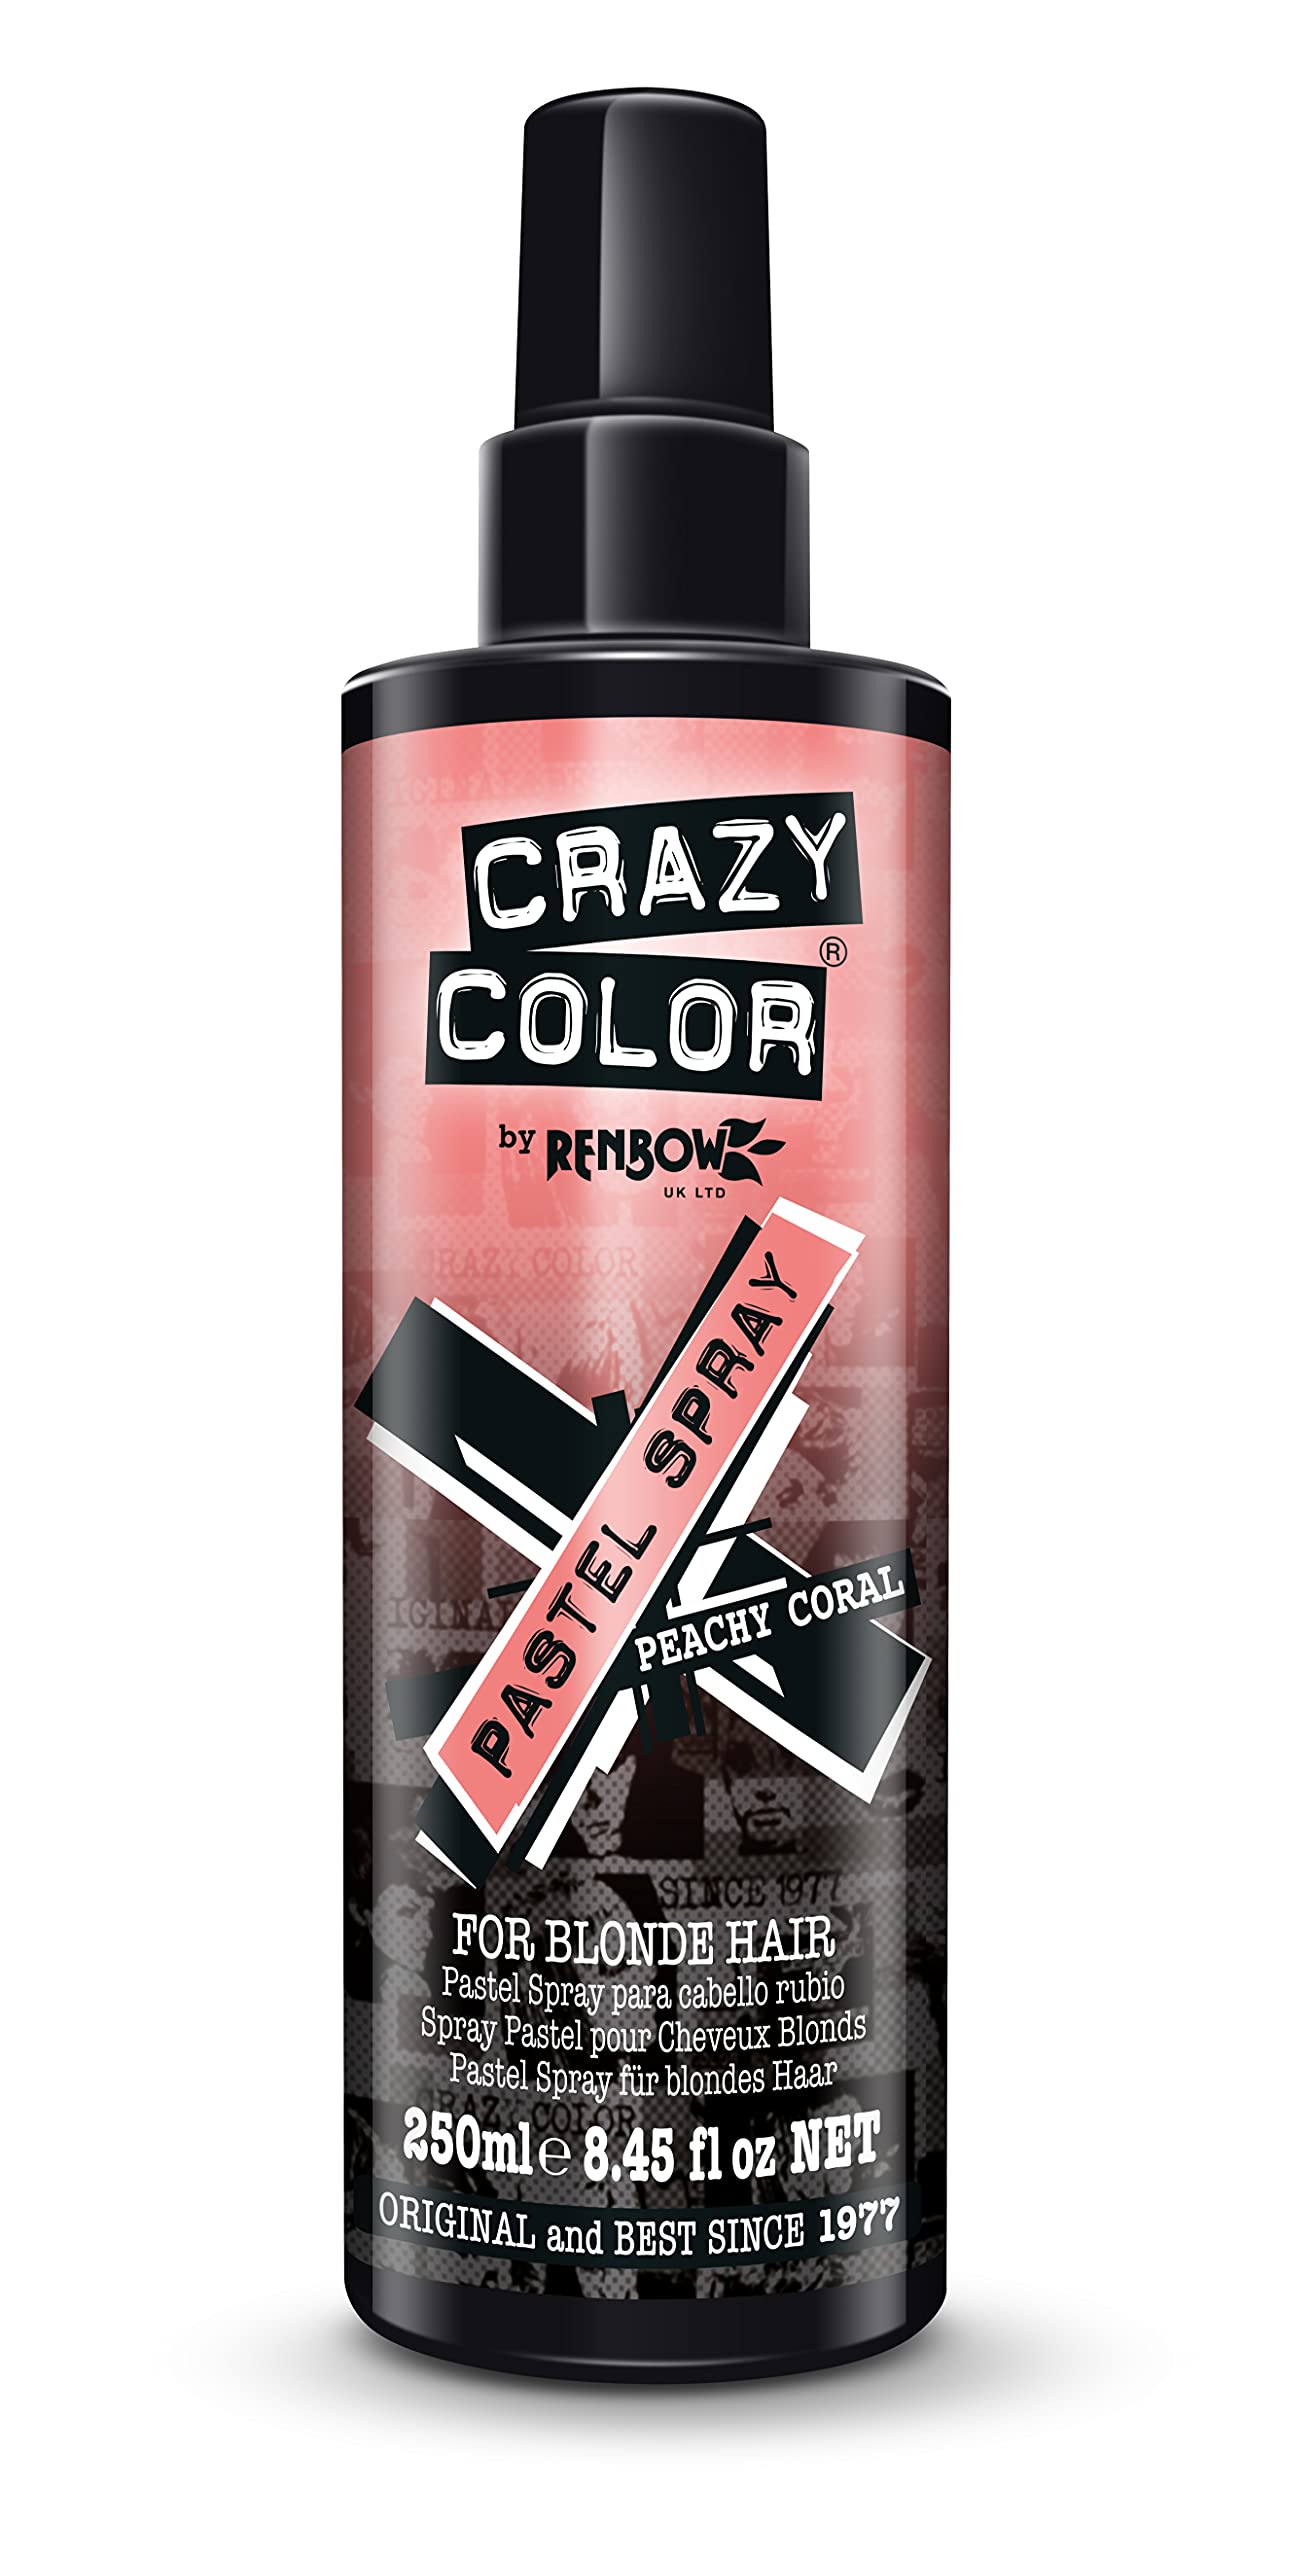 Crazy Color Temporary Hair Colour Pastel Spray, Peachy Coral, 250 ml